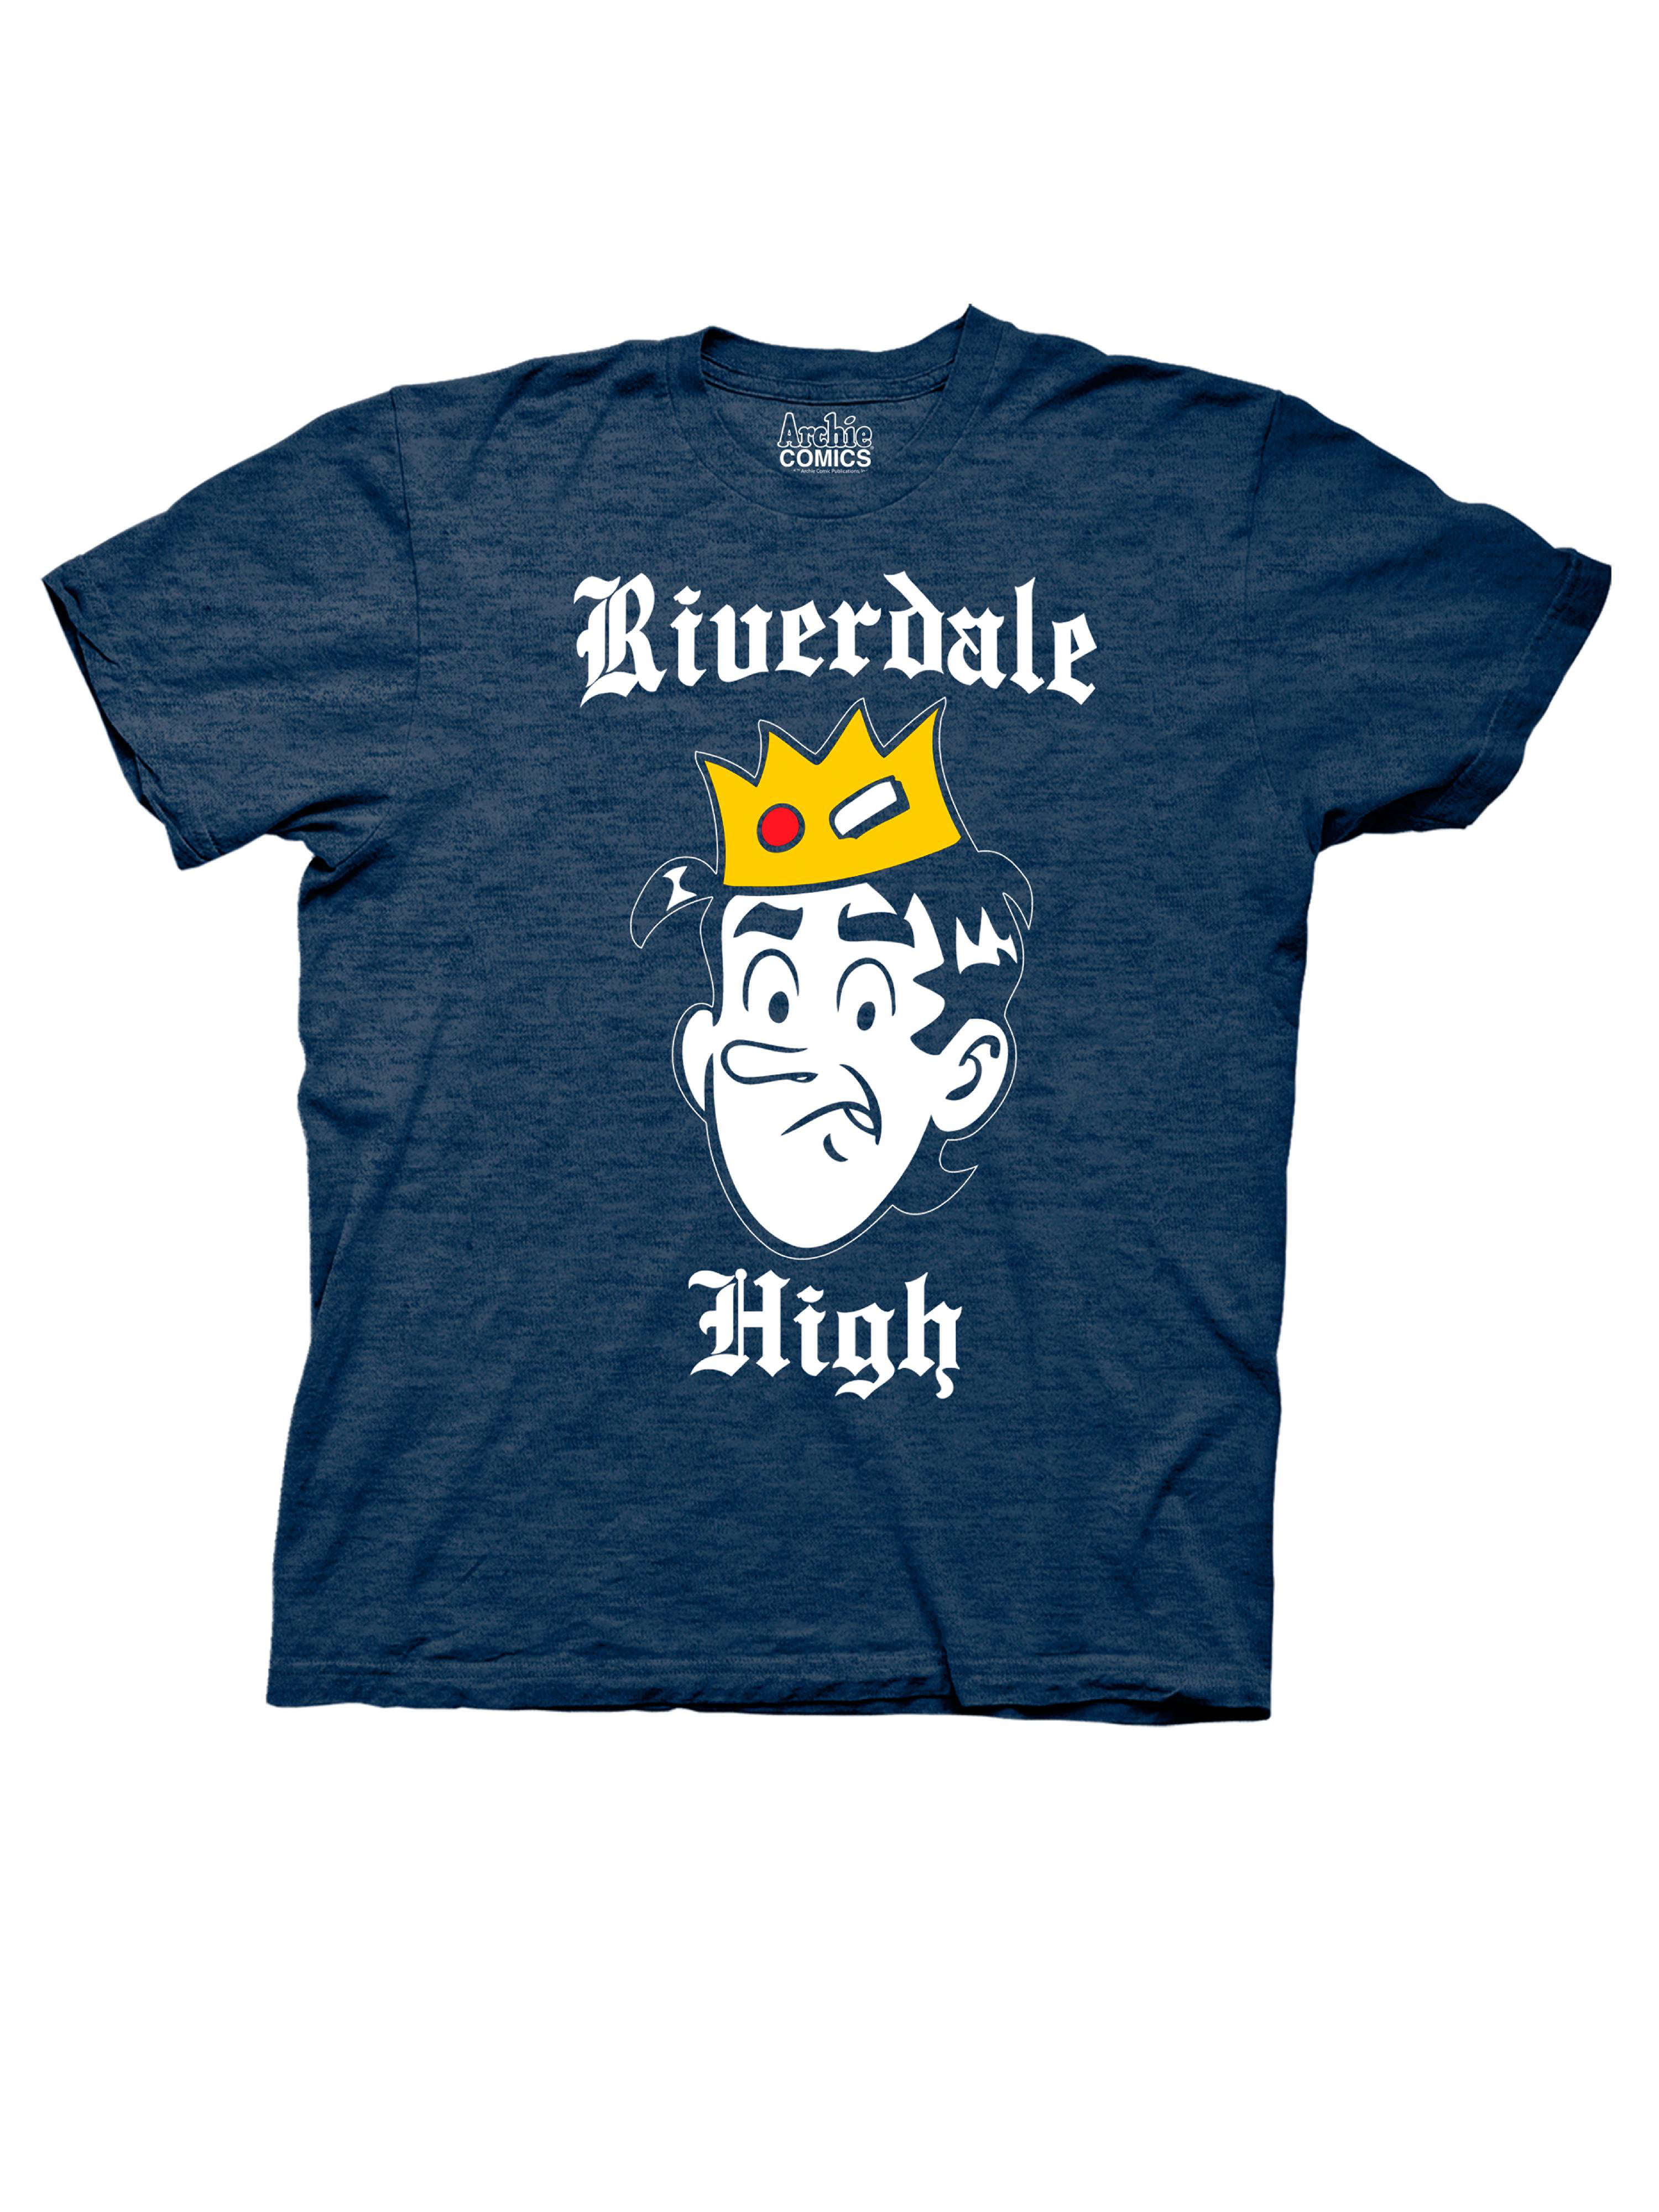 Archie Jughead Big Men's Short Sleeve Graphic T-Shirt - Walmart.com